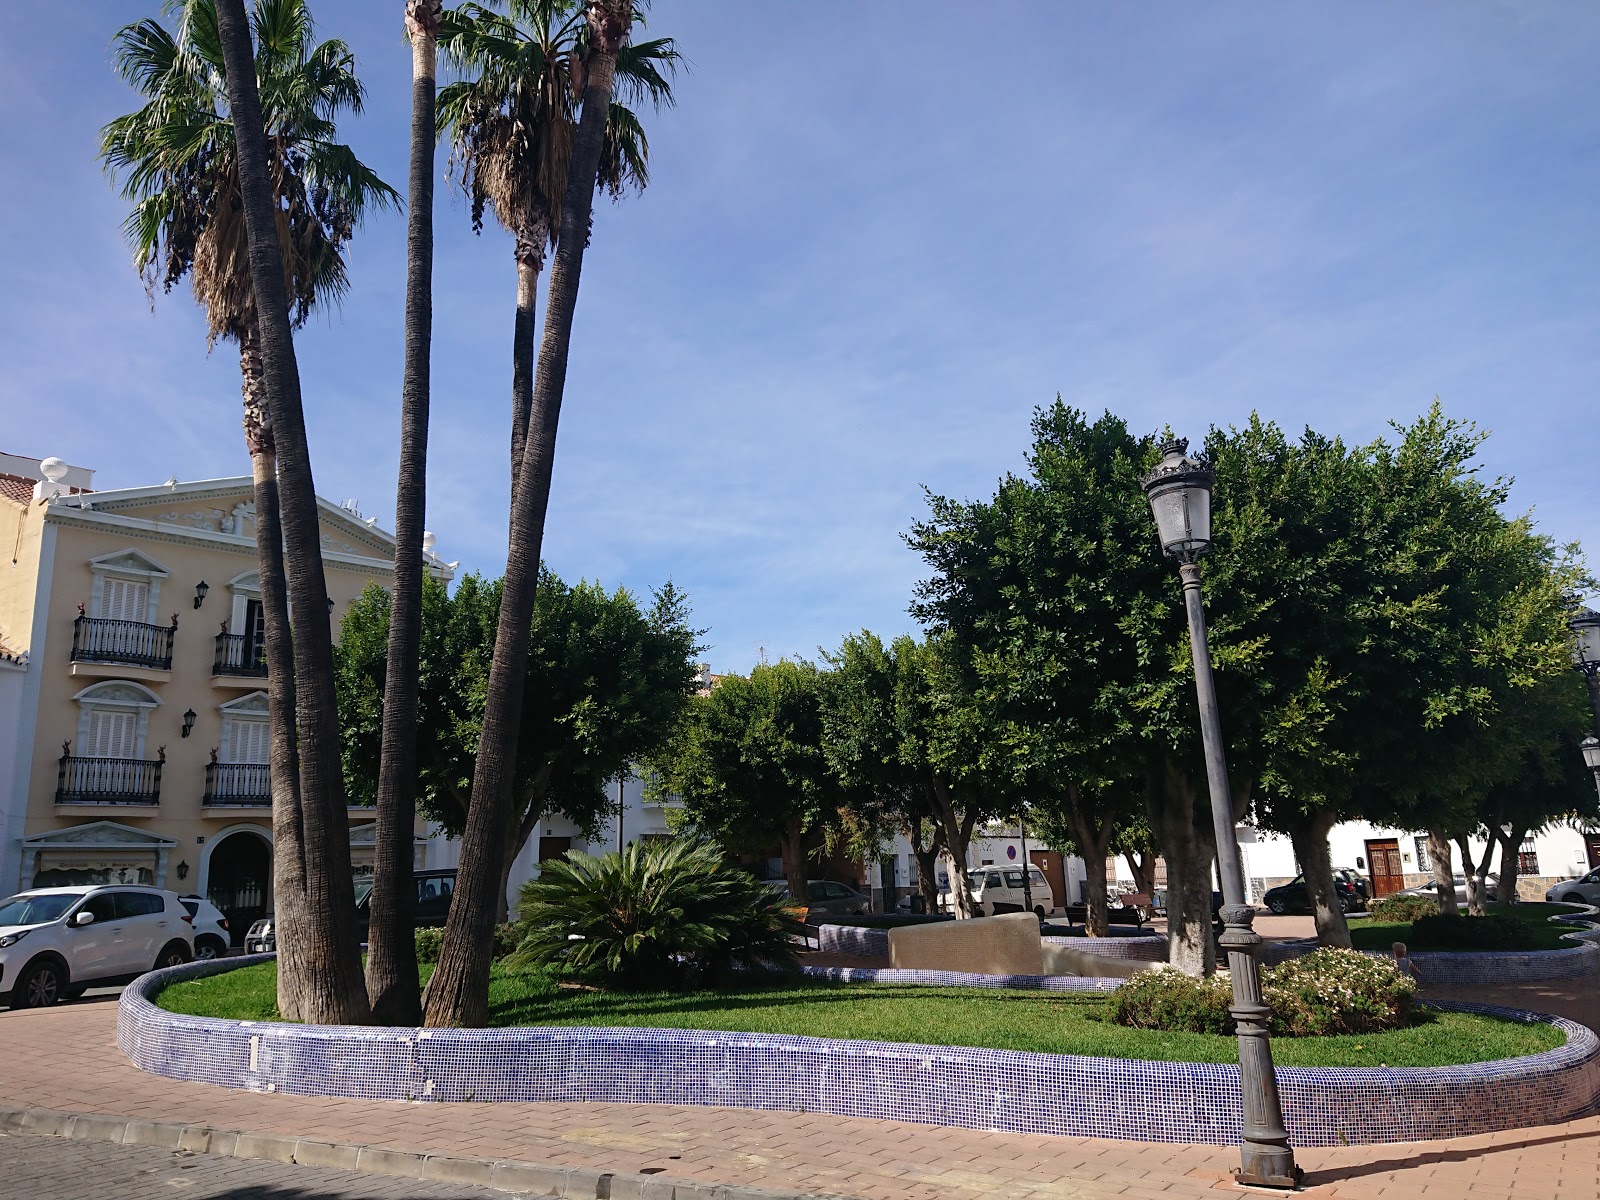 Plaza Manuel Alcántara